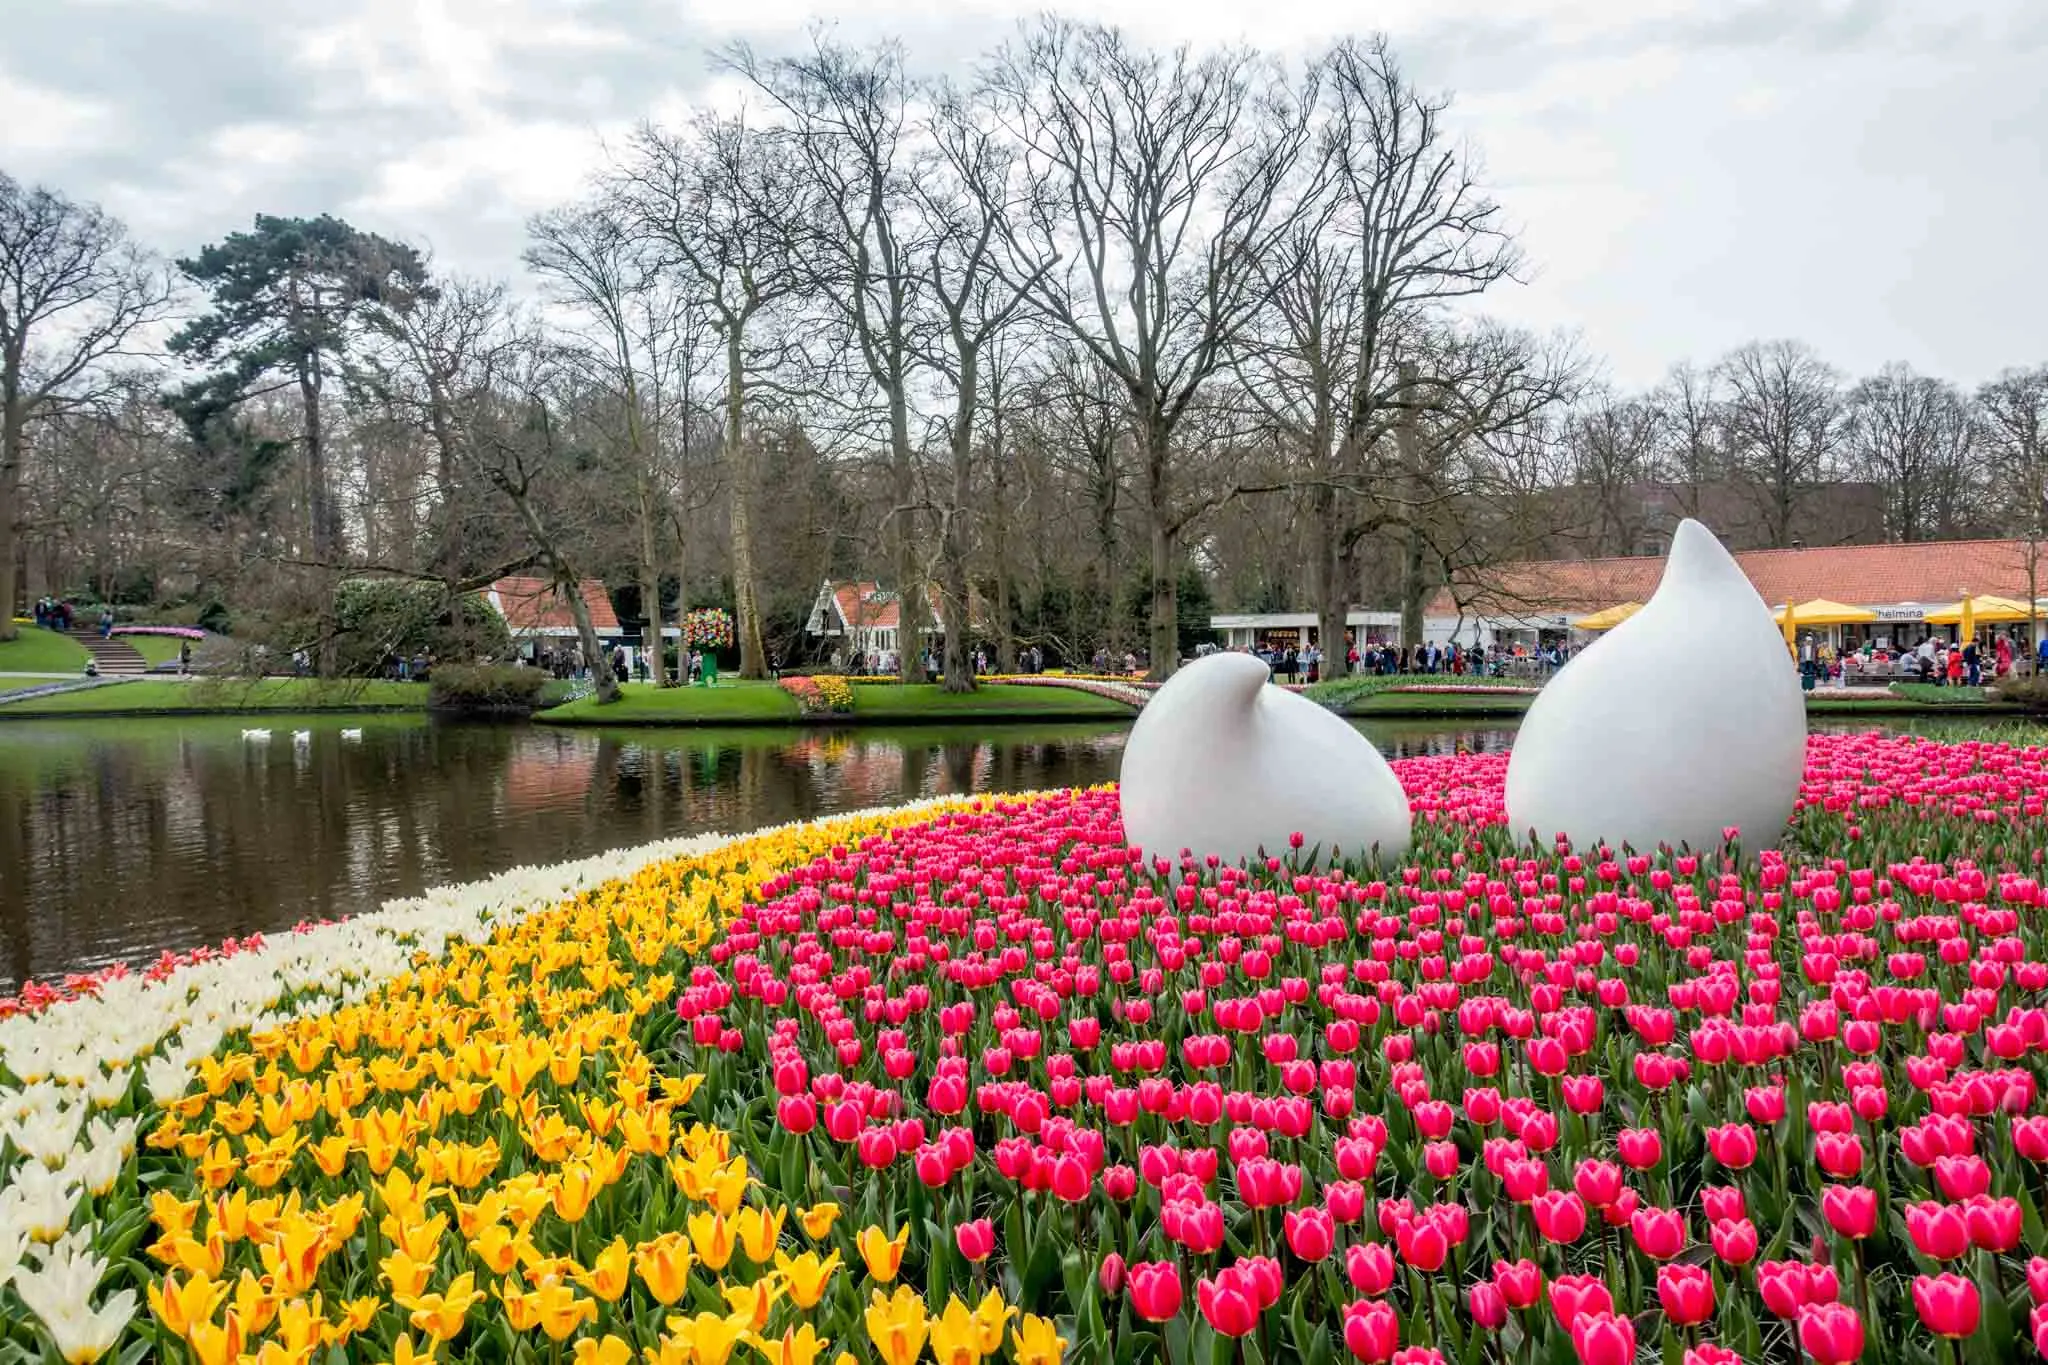 Sculpture and tulips at Keukenhof gardens